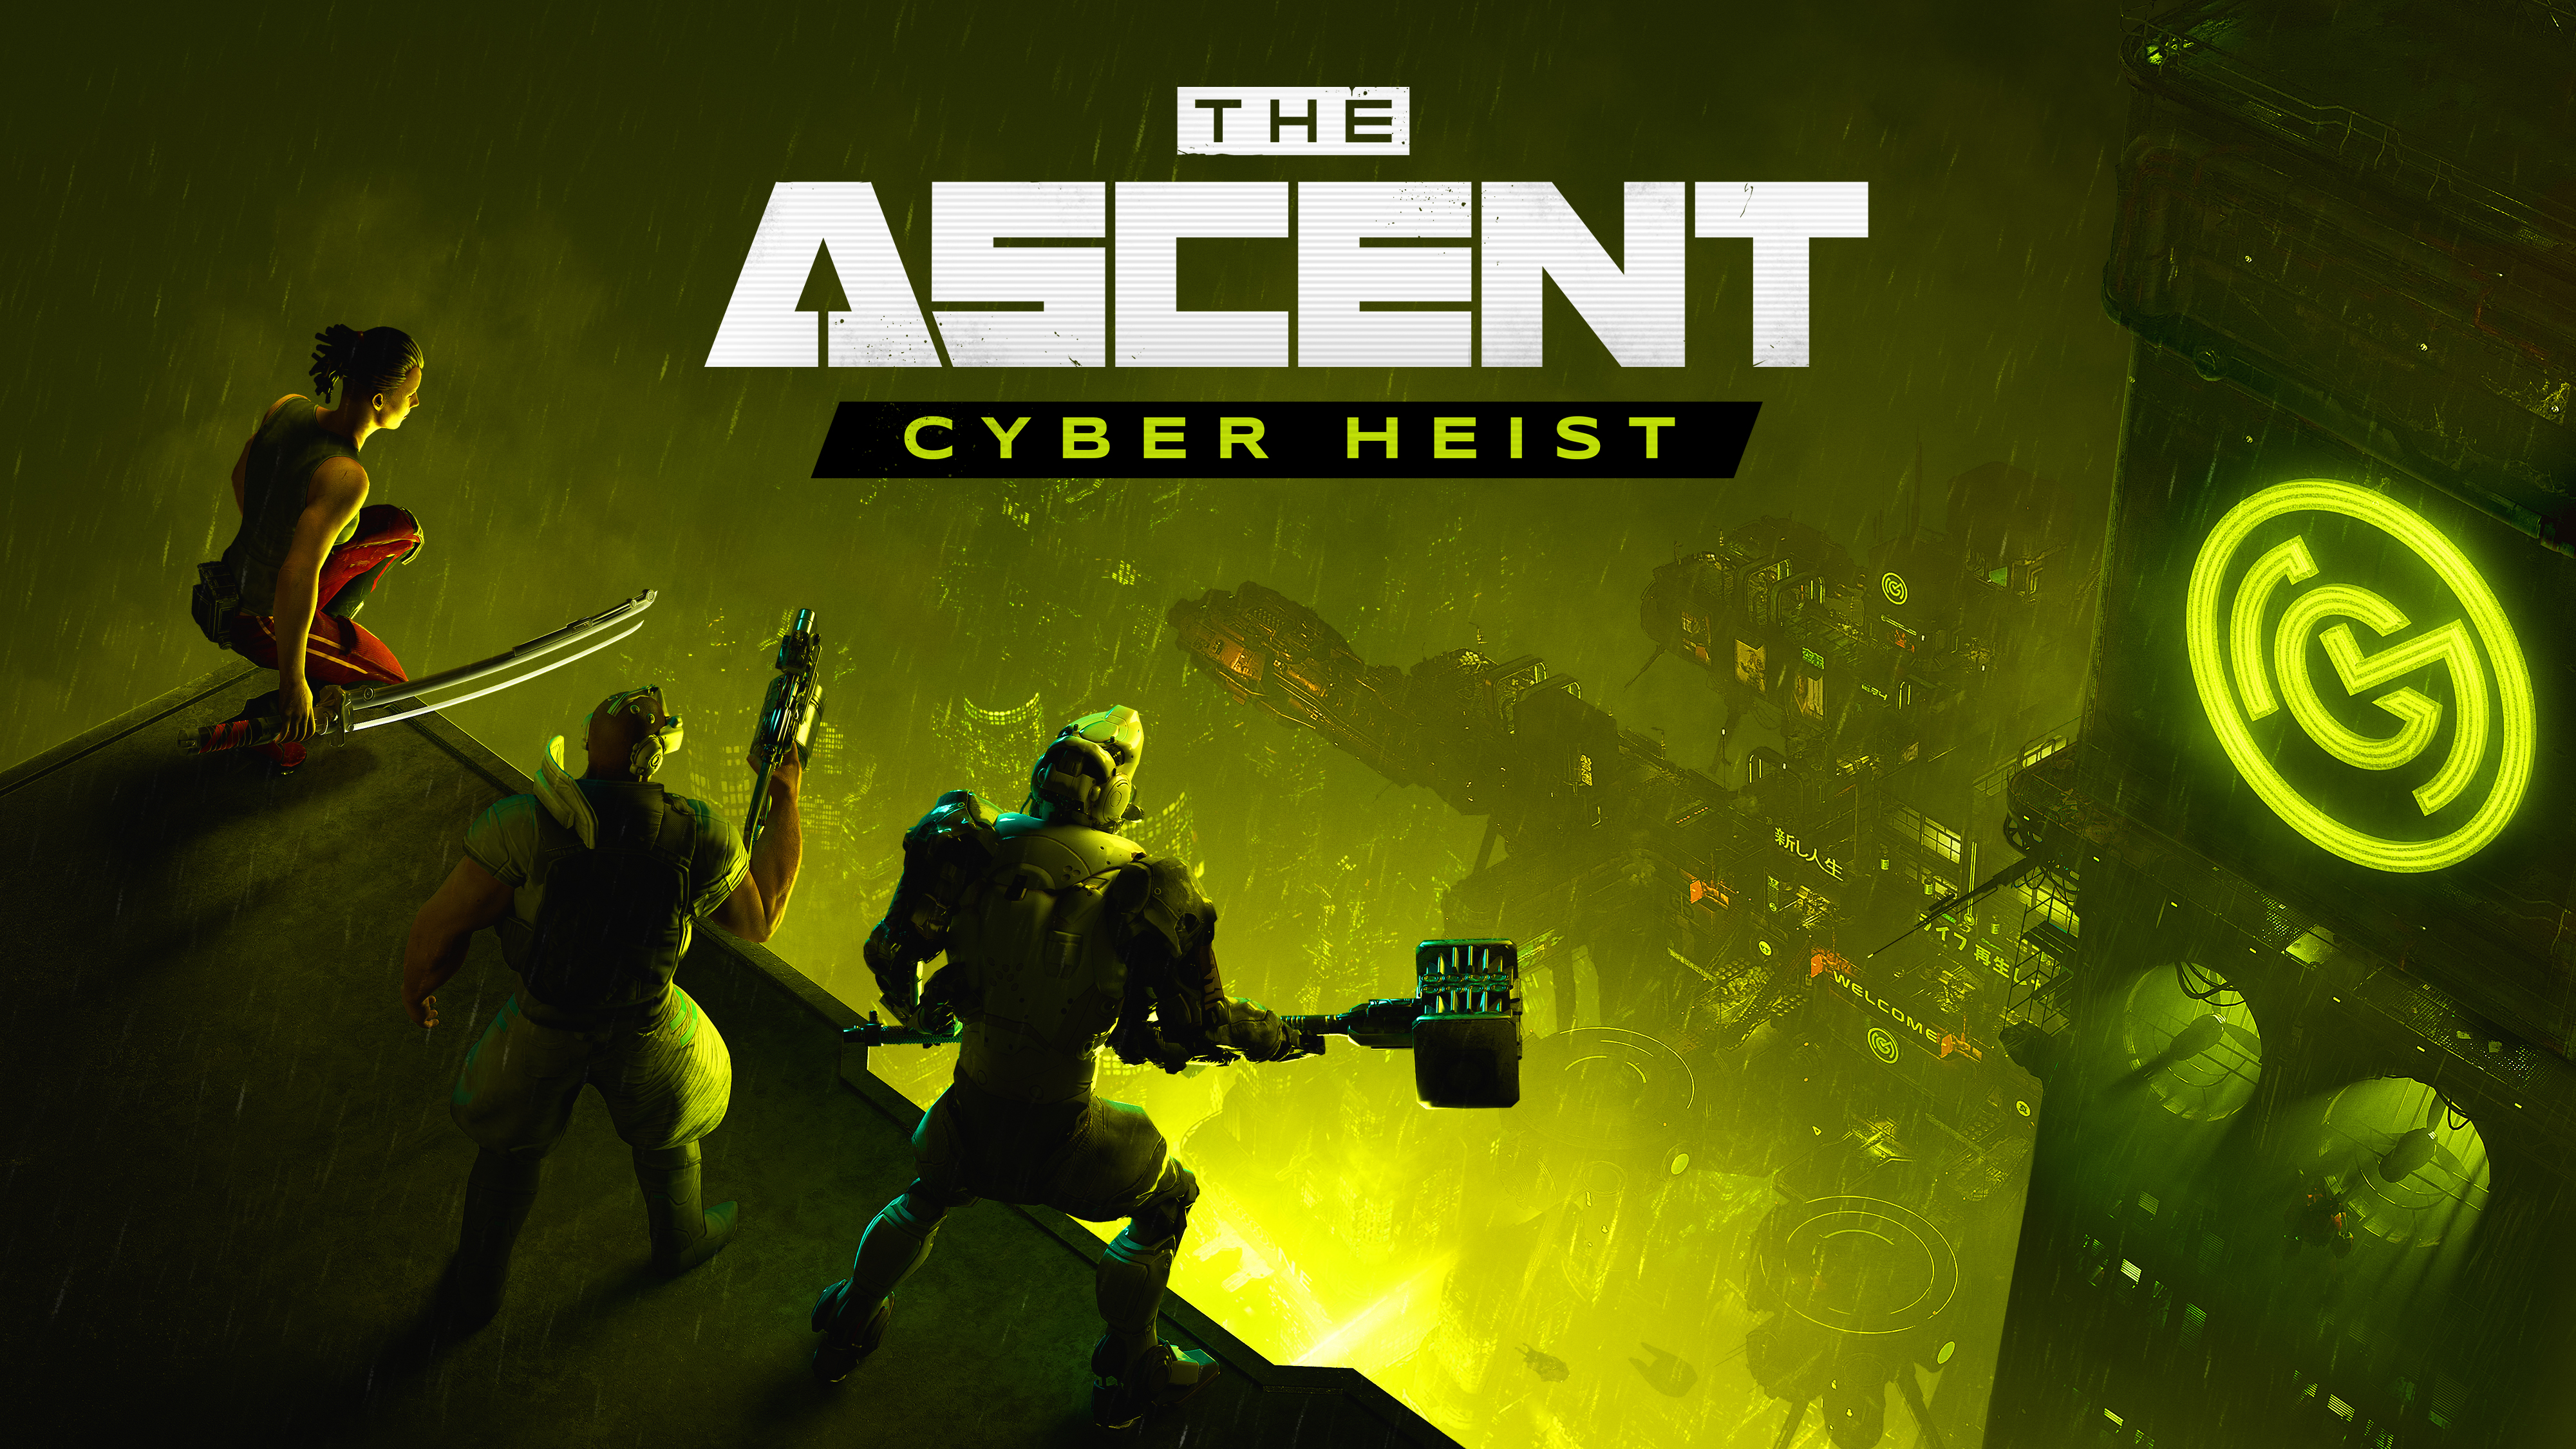 ¡Únete al atraco! el shooter de acción Cyberpunk The Ascent anuncia el nuevo DLC Cyber Heist